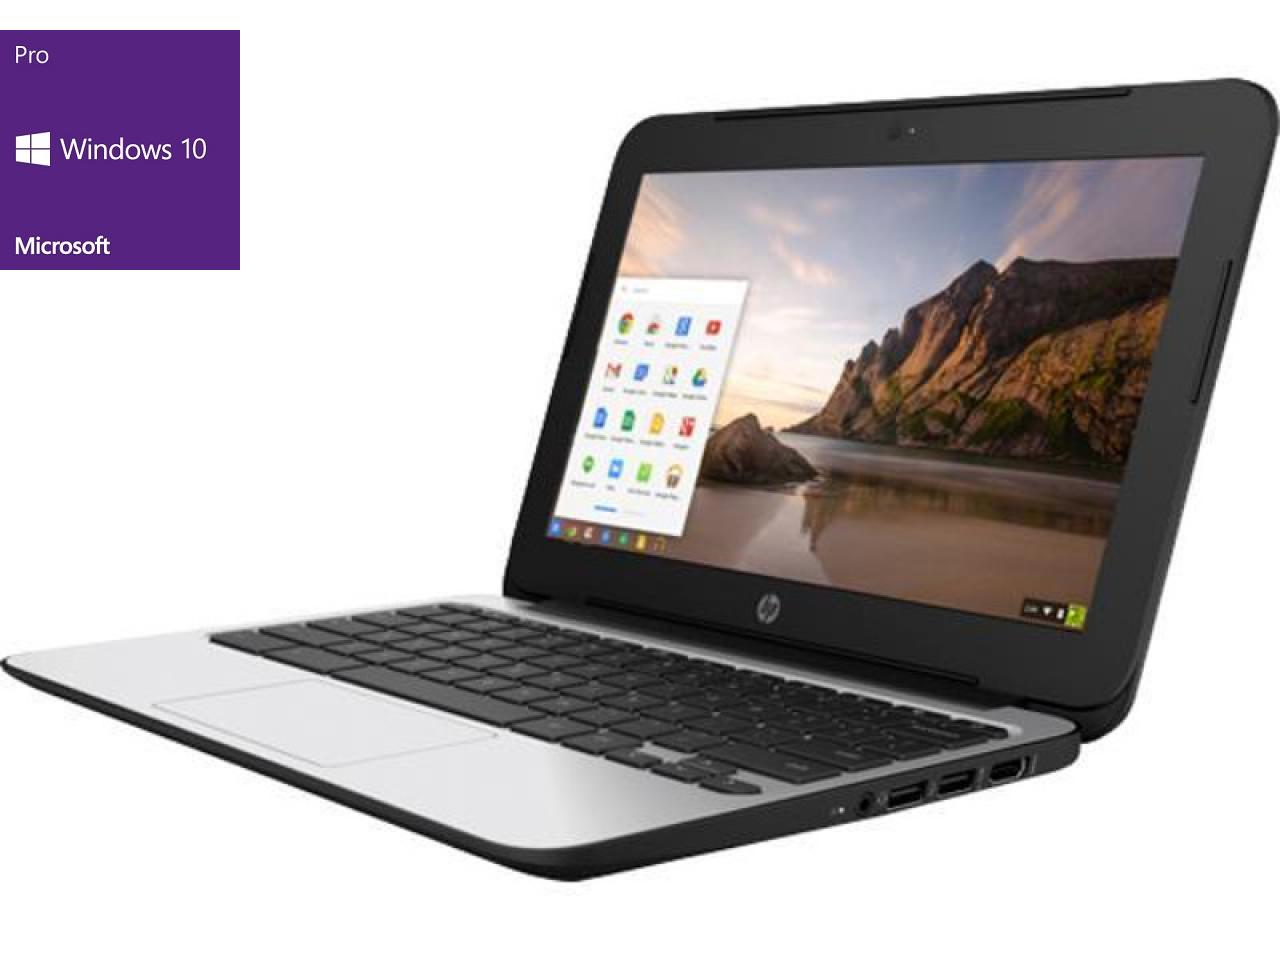 HP ProBook 640 G2  - shop.bb-net.de